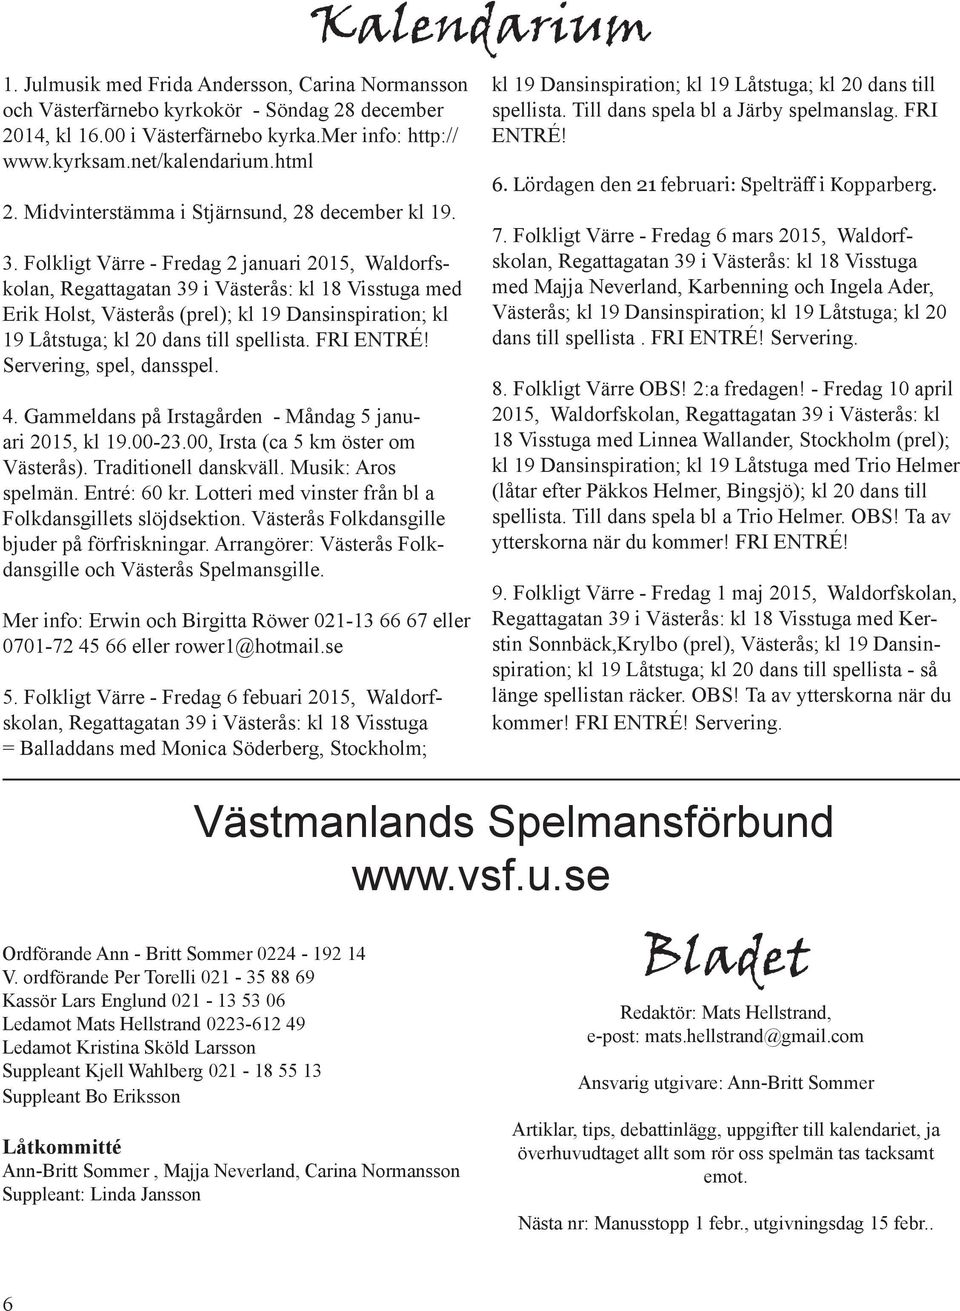 Folkligt Värre - Fredag 2 januari 2015, Waldorfskolan, Regattagatan 39 i Västerås: kl 18 Visstuga med Erik Holst, Västerås (prel); kl 19 Dansinspiration; kl 19 Låtstuga; kl 20 dans till spellista.